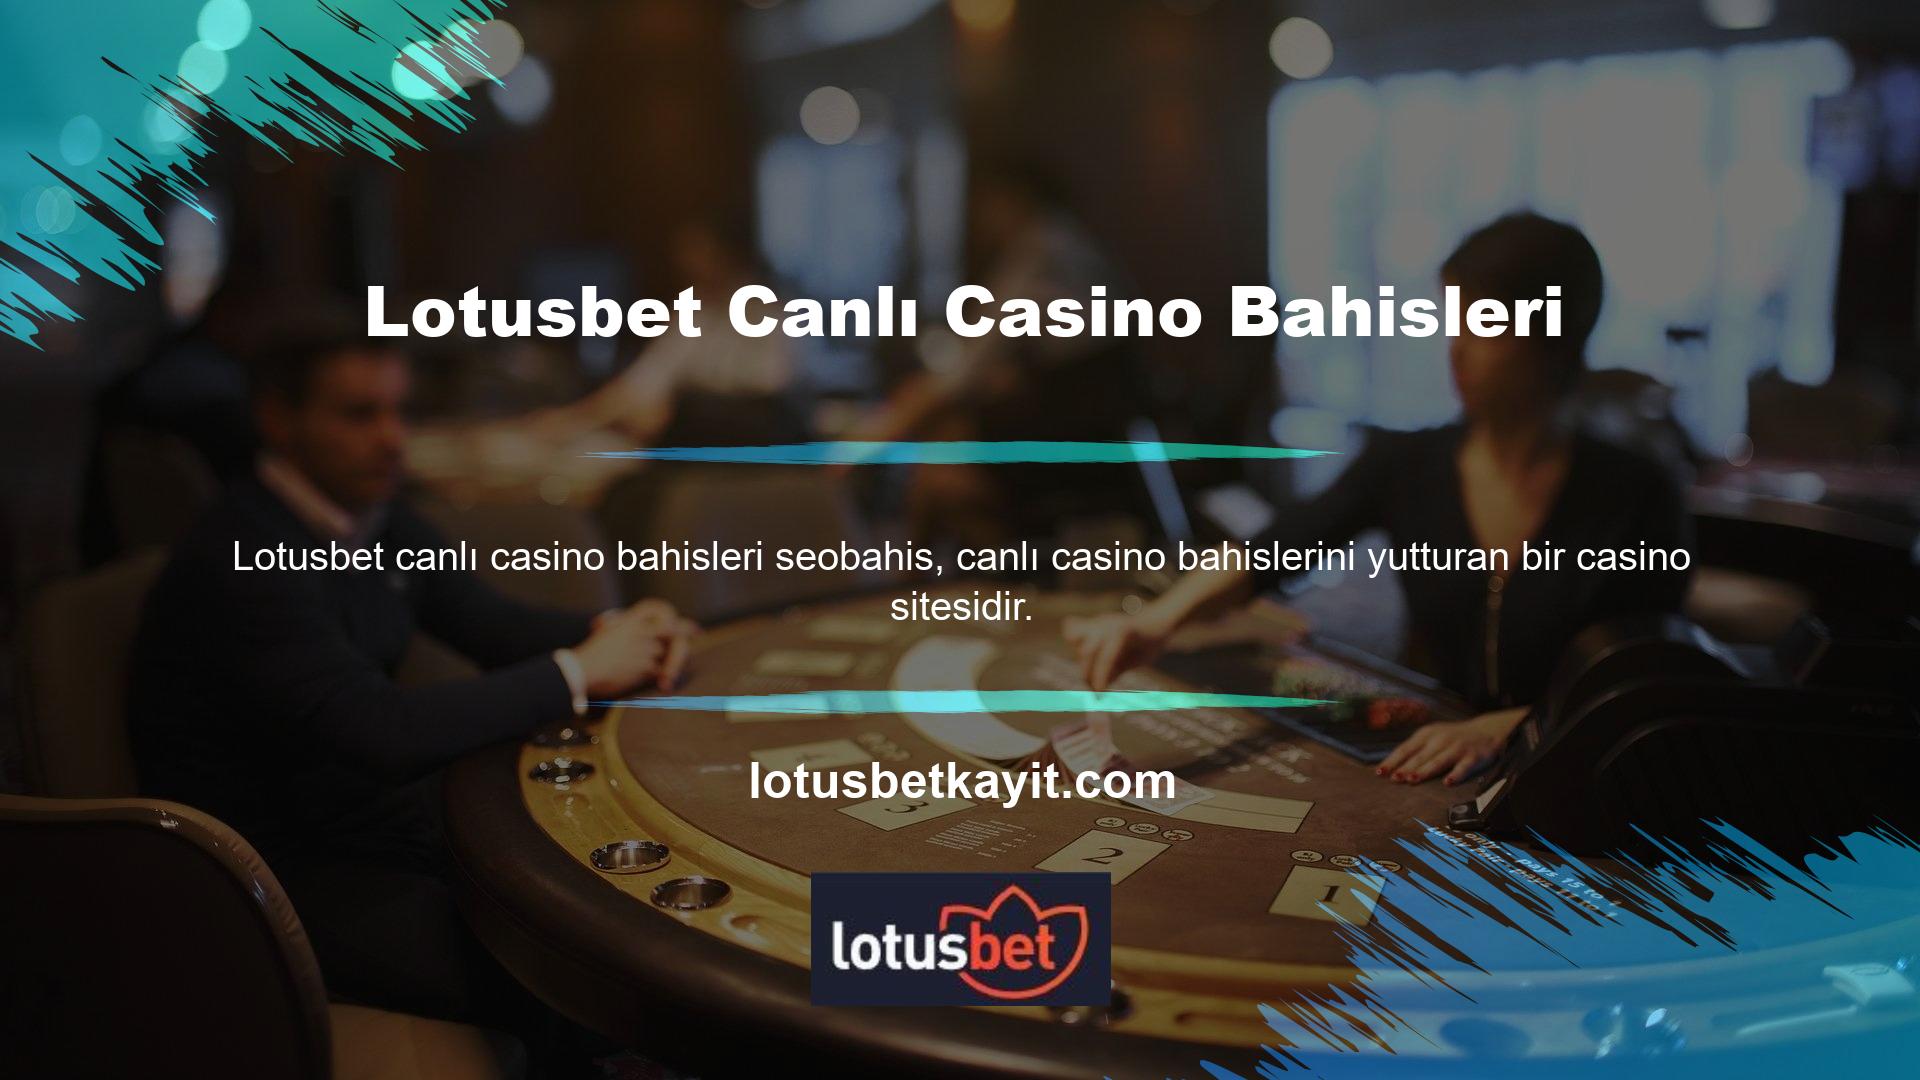 Bahis sitelerinde spor bahisleri dışında en popüler bahis türü canlı casinolardır